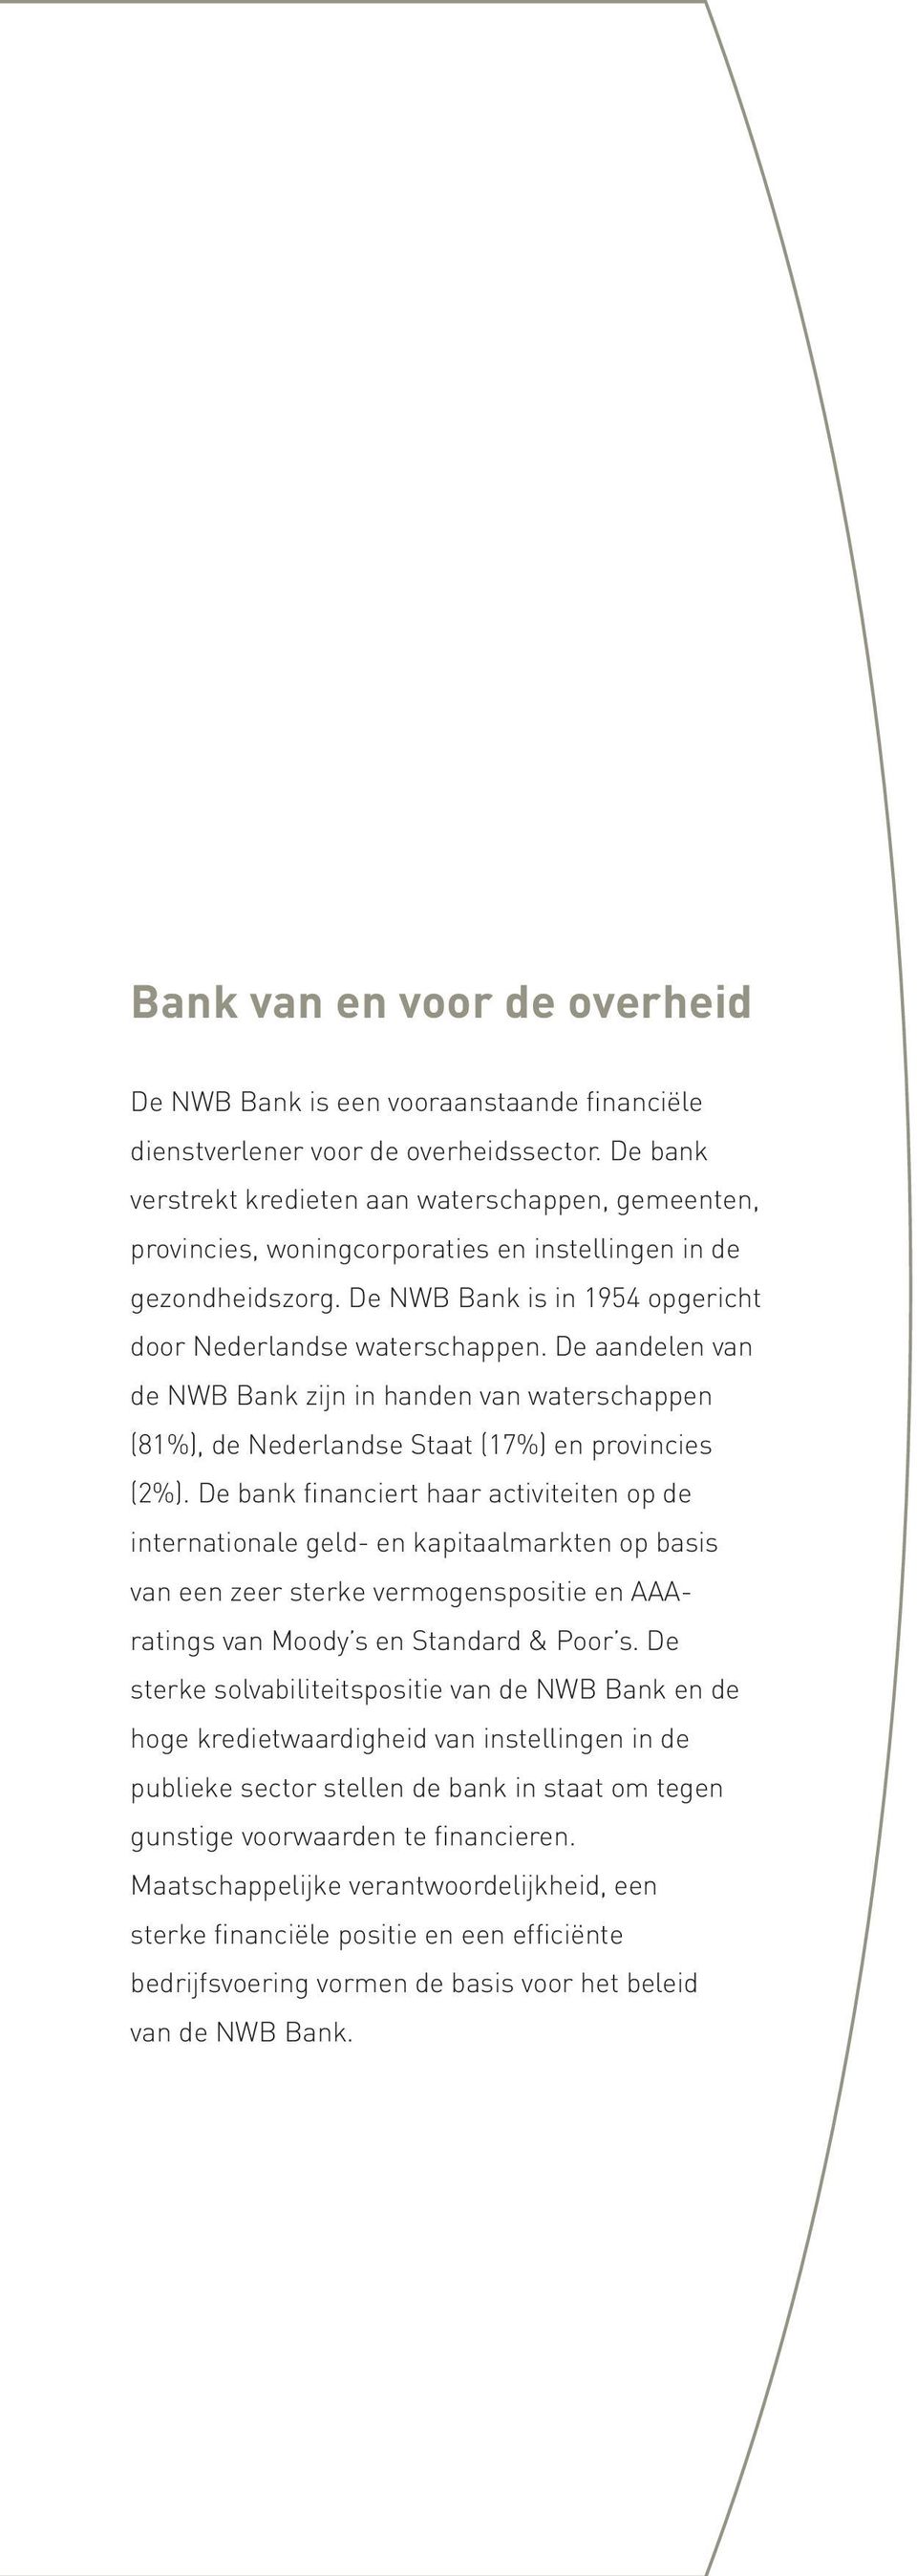 De aandelen van de NWB Bank zijn in handen van waterschappen (81%), de Nederlandse Staat (17%) en provincies (2%).